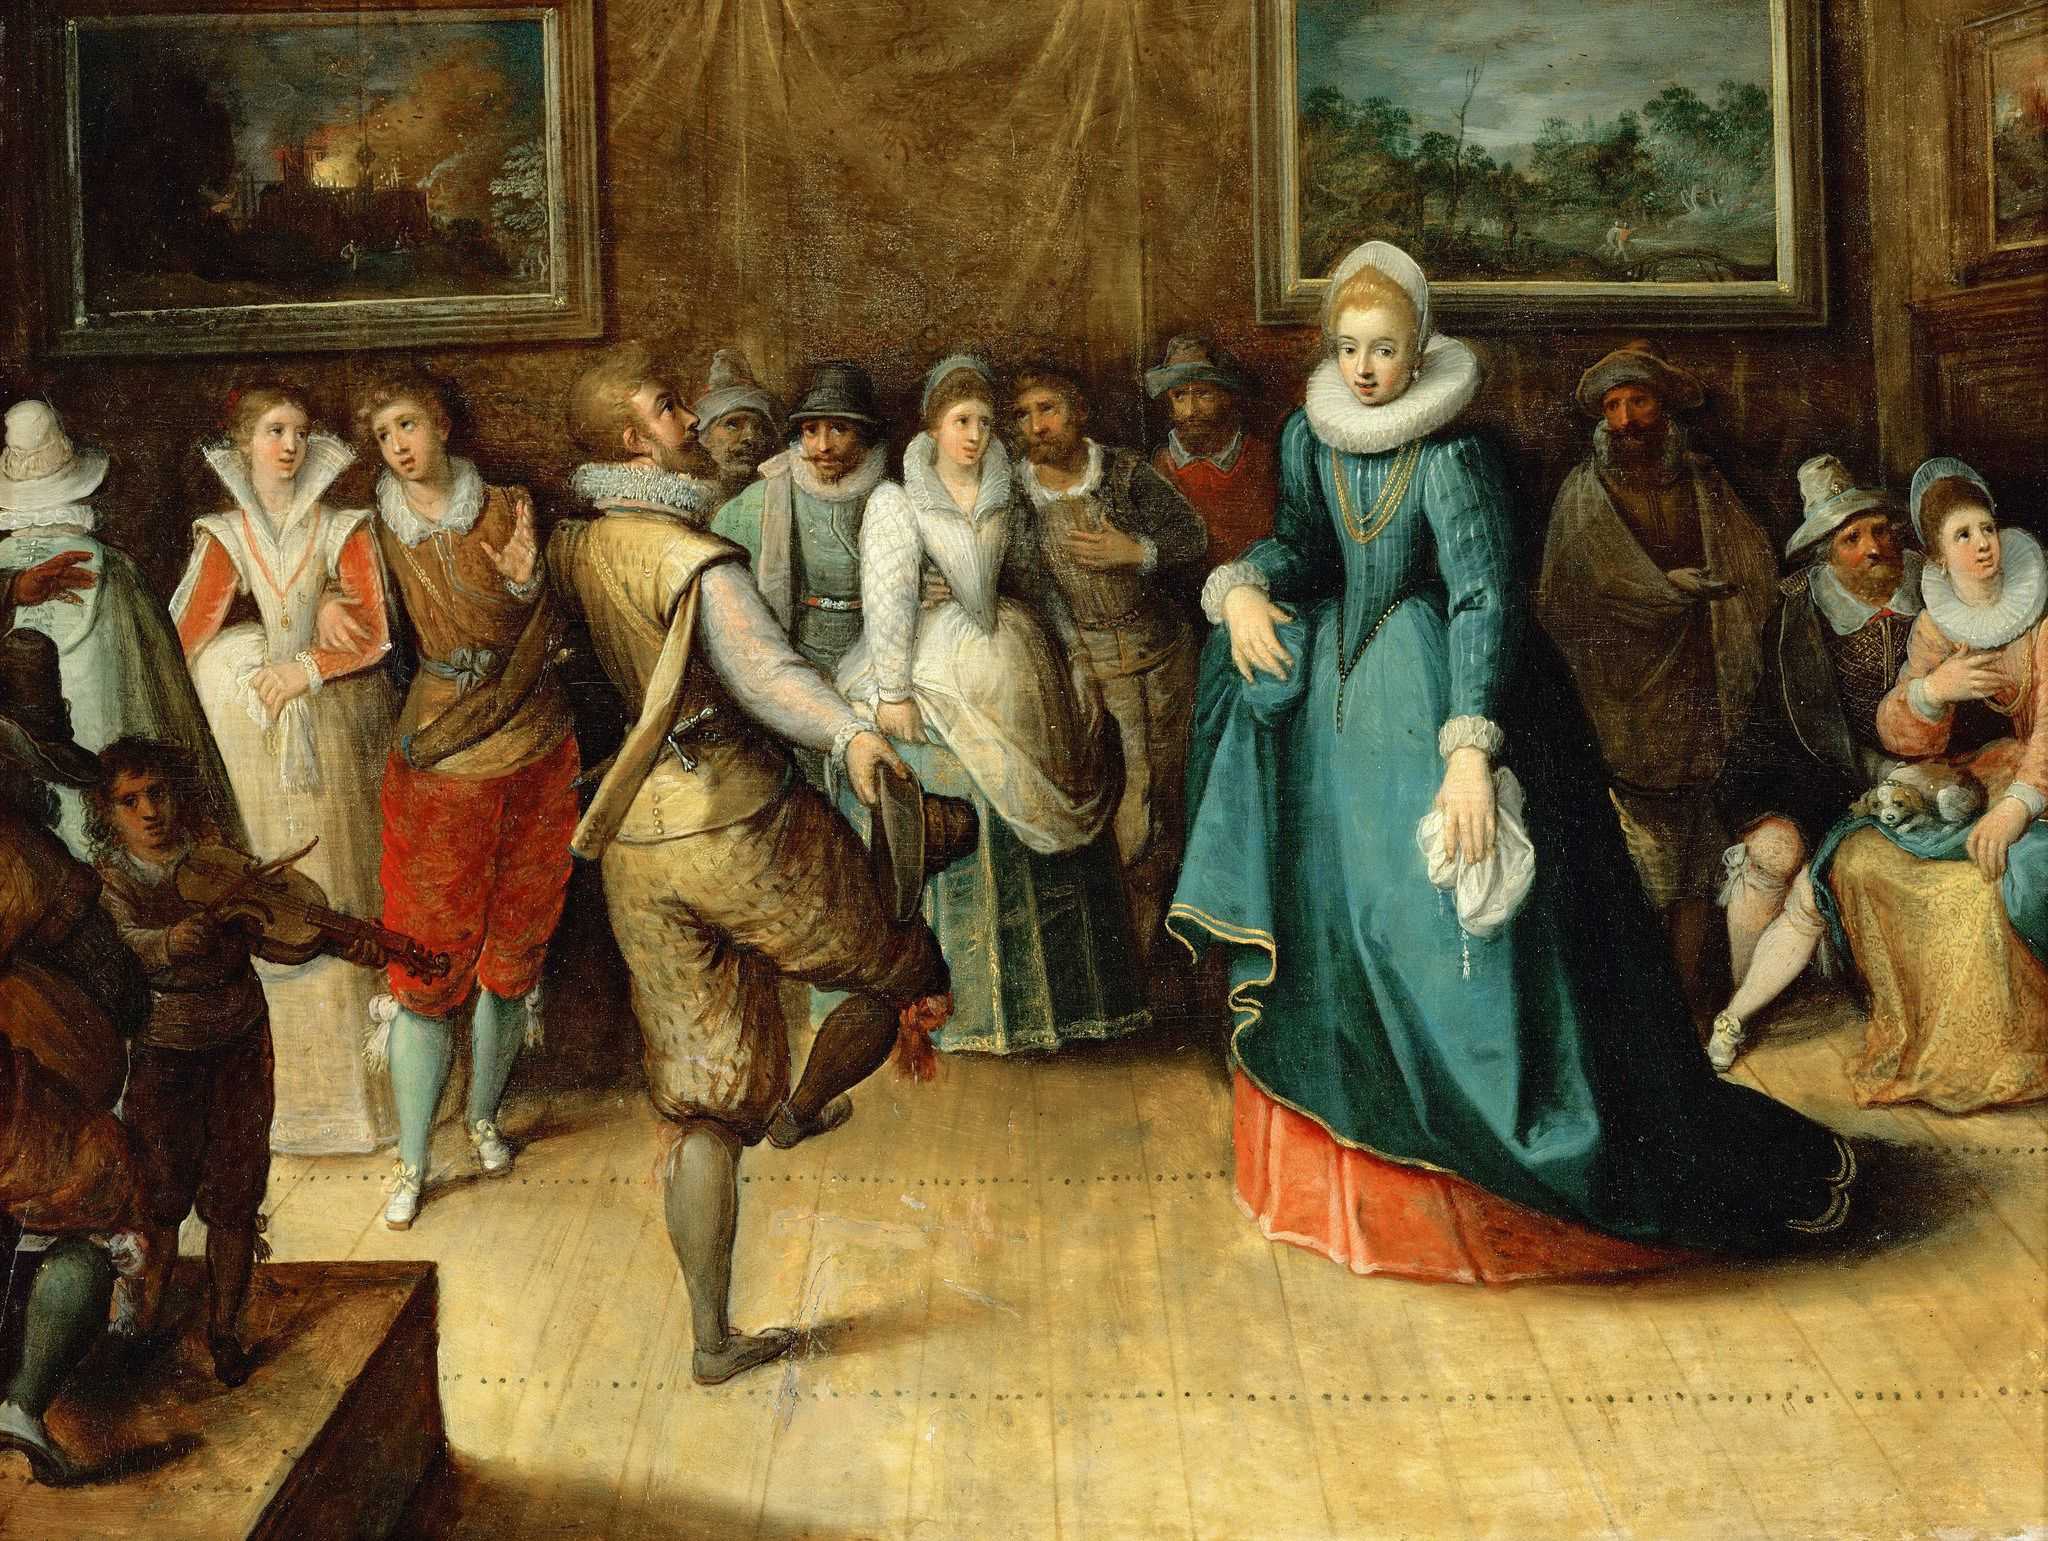 Танец возрождениясодержание а также итальянский танец пятнадцатого века [ править ]